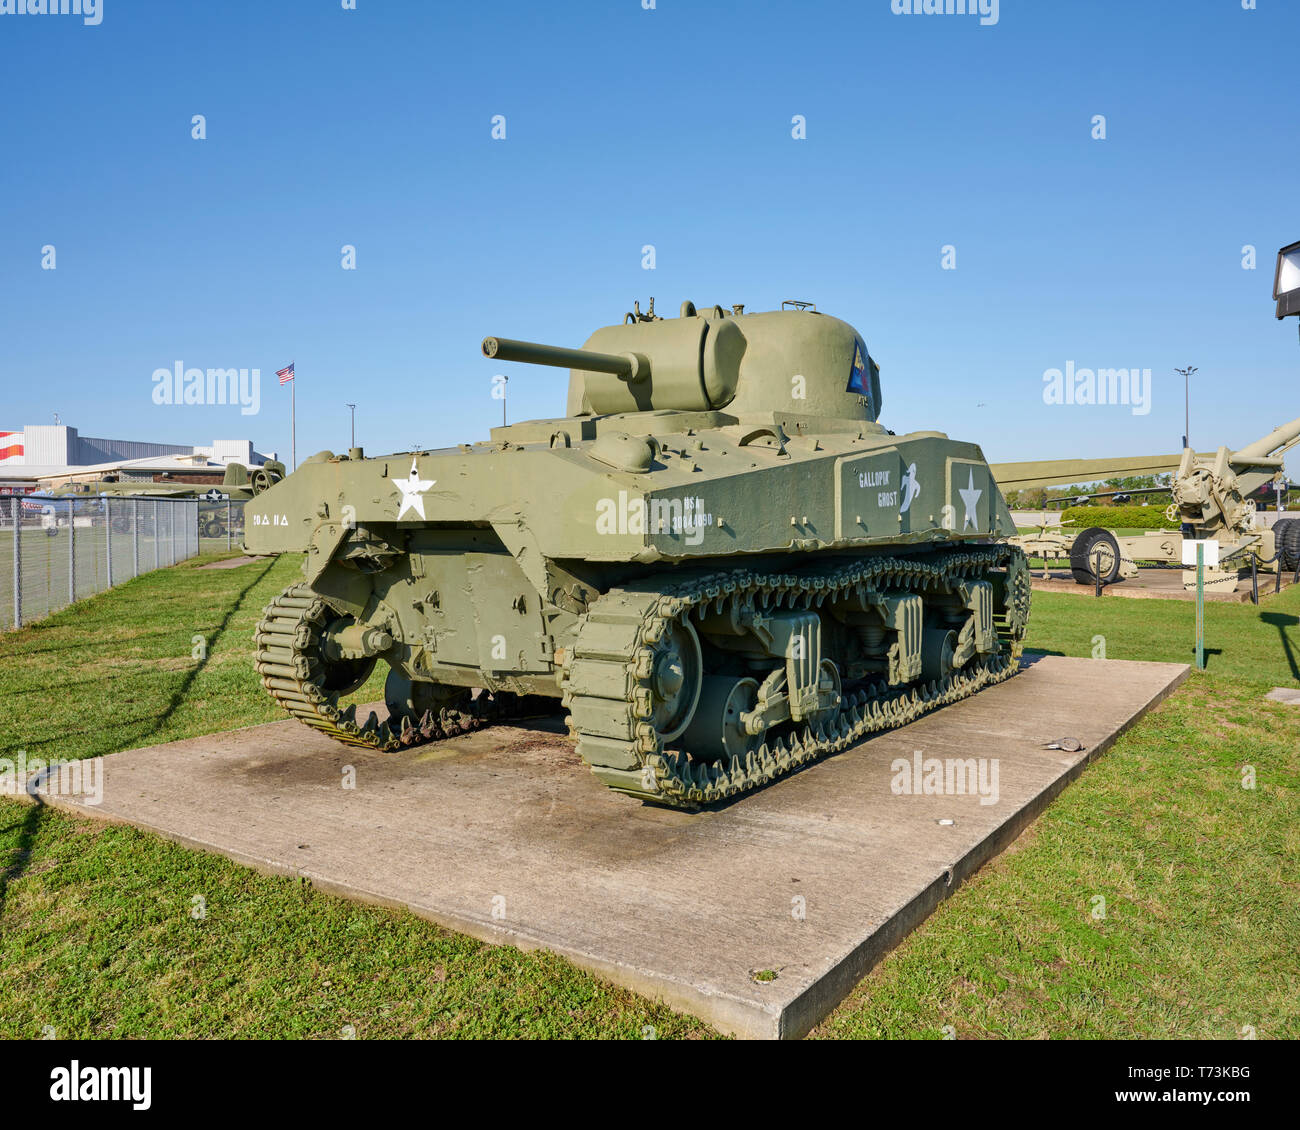 United States US Army M4 Sherman DE LA SECONDE GUERRE MONDIALE OU LA DEUXIÈME GUERRE MONDIALE sur l'affichage à l'extérieur d'un musée d'histoire militaire de Mobile, en Alabama, USA. Banque D'Images